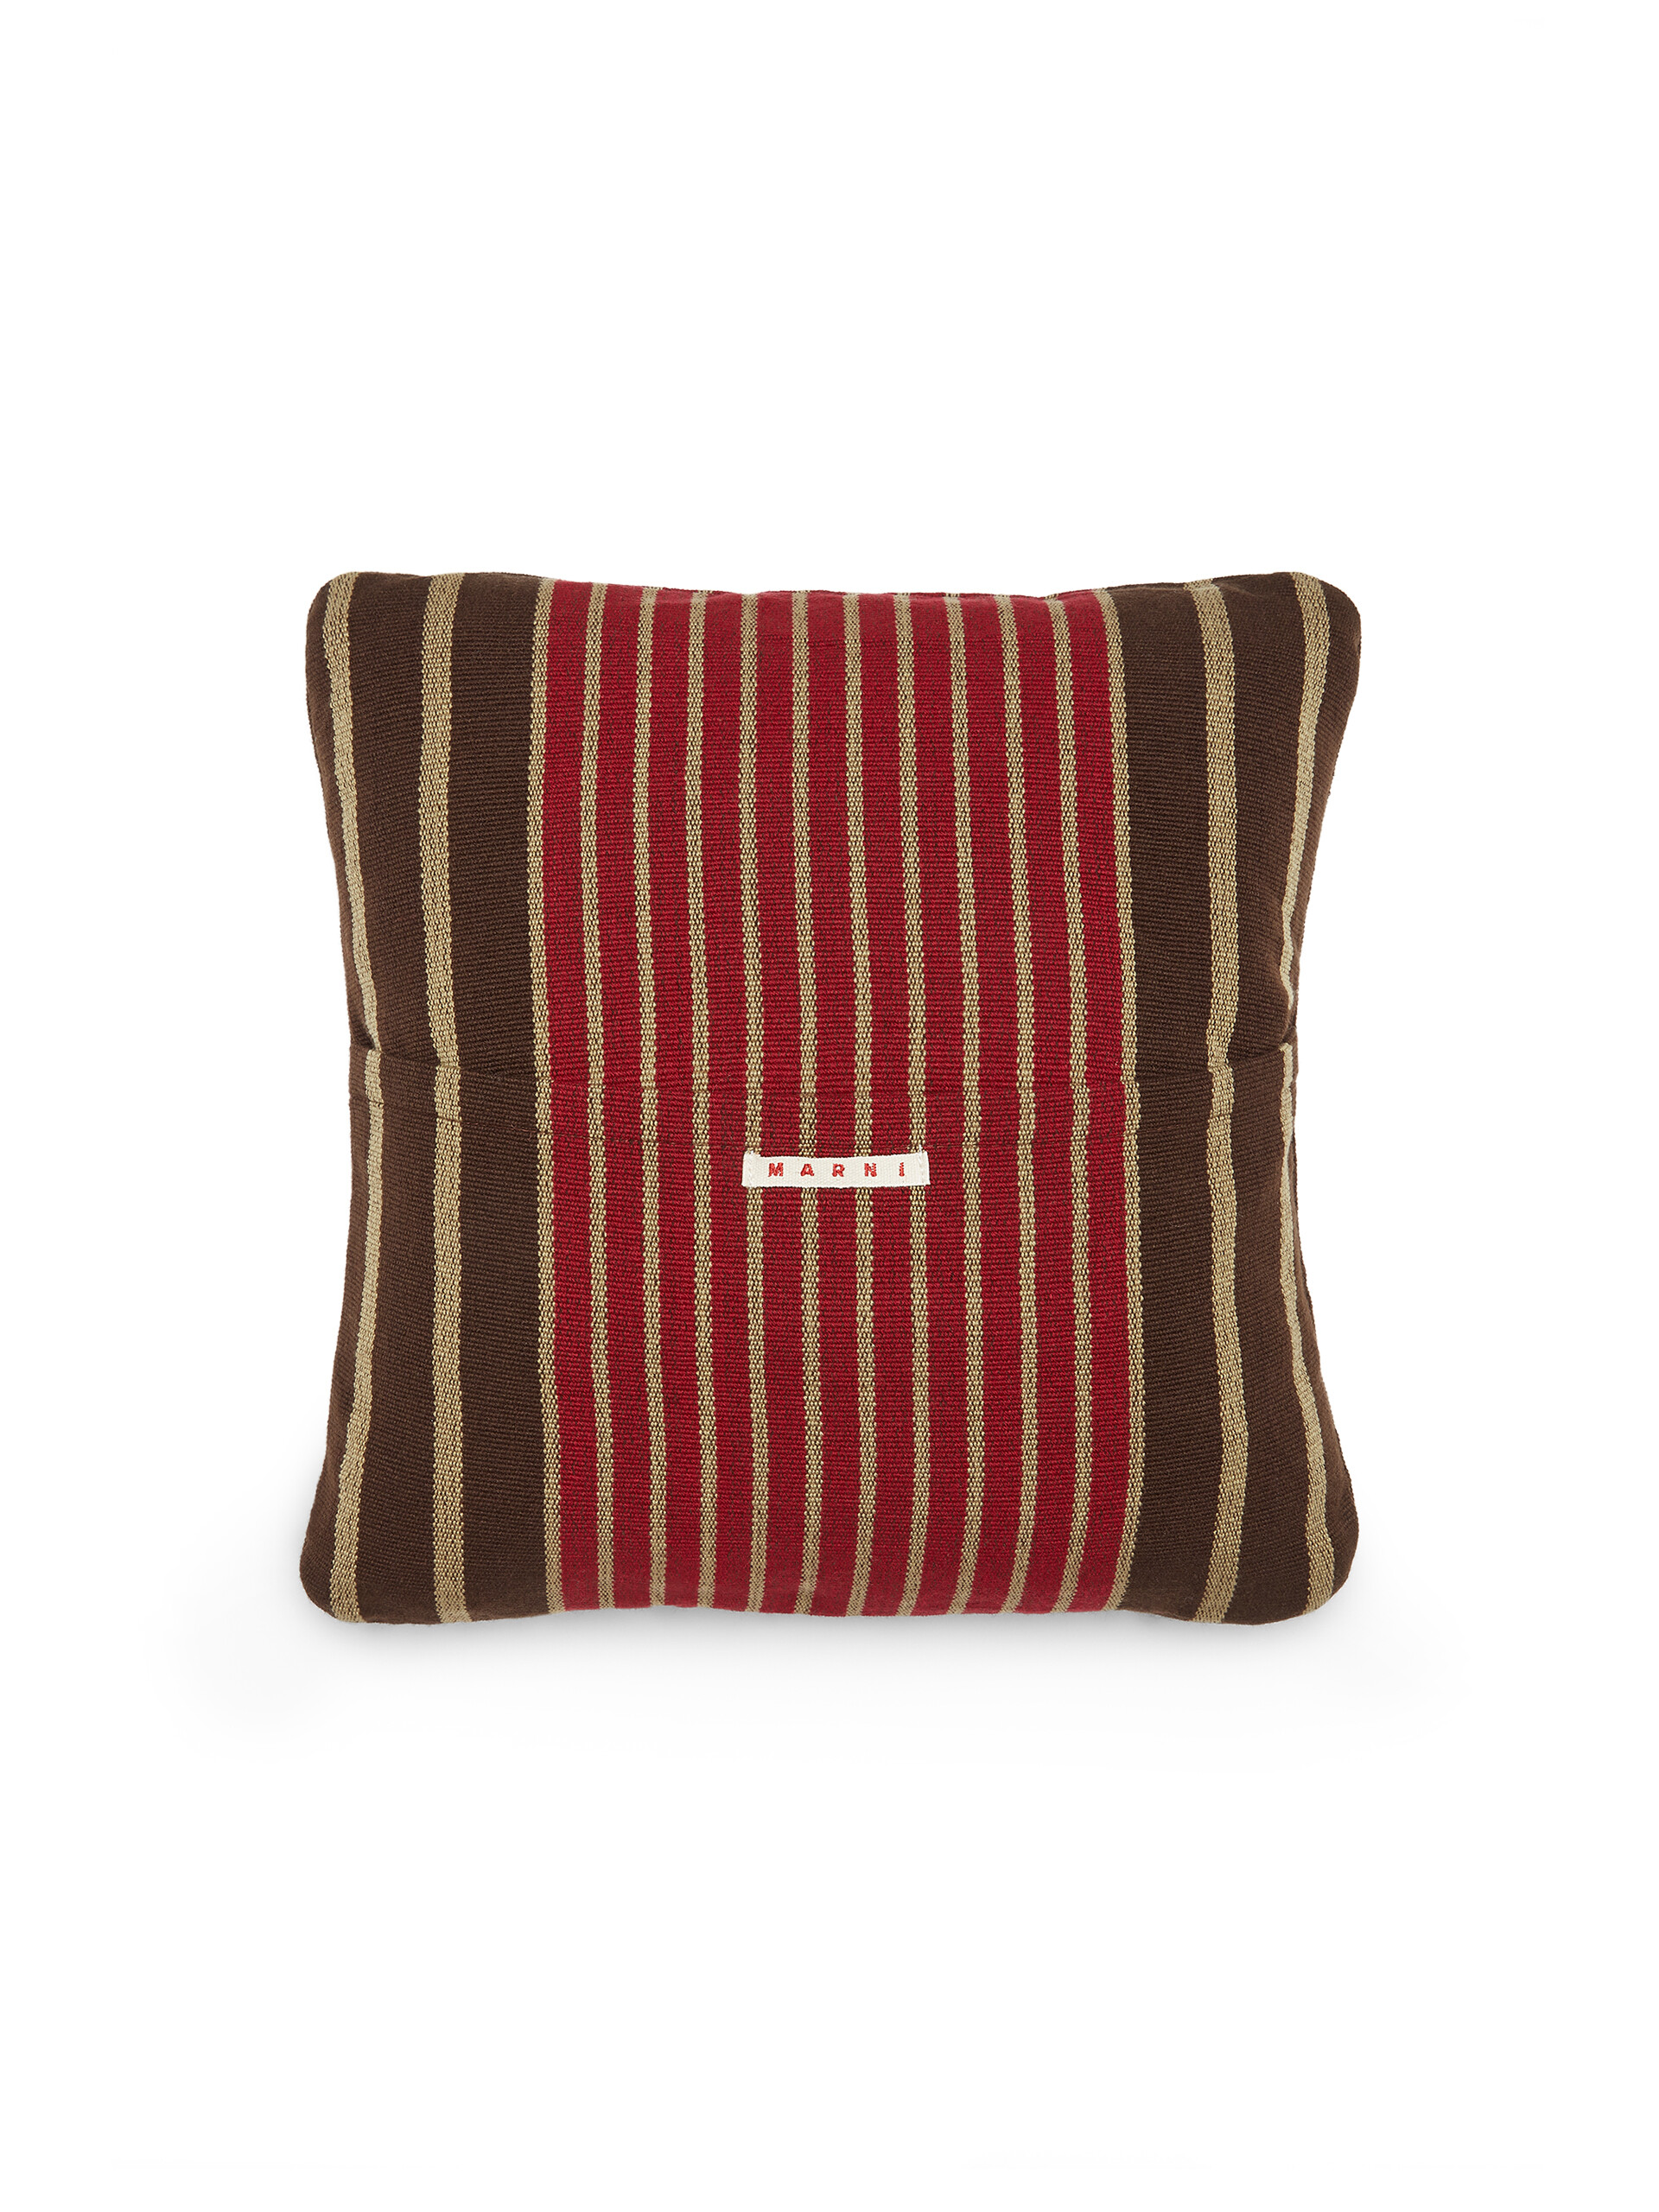 MARNI MARKET square cushion in multicolor brown fabric - Furniture - Image 2